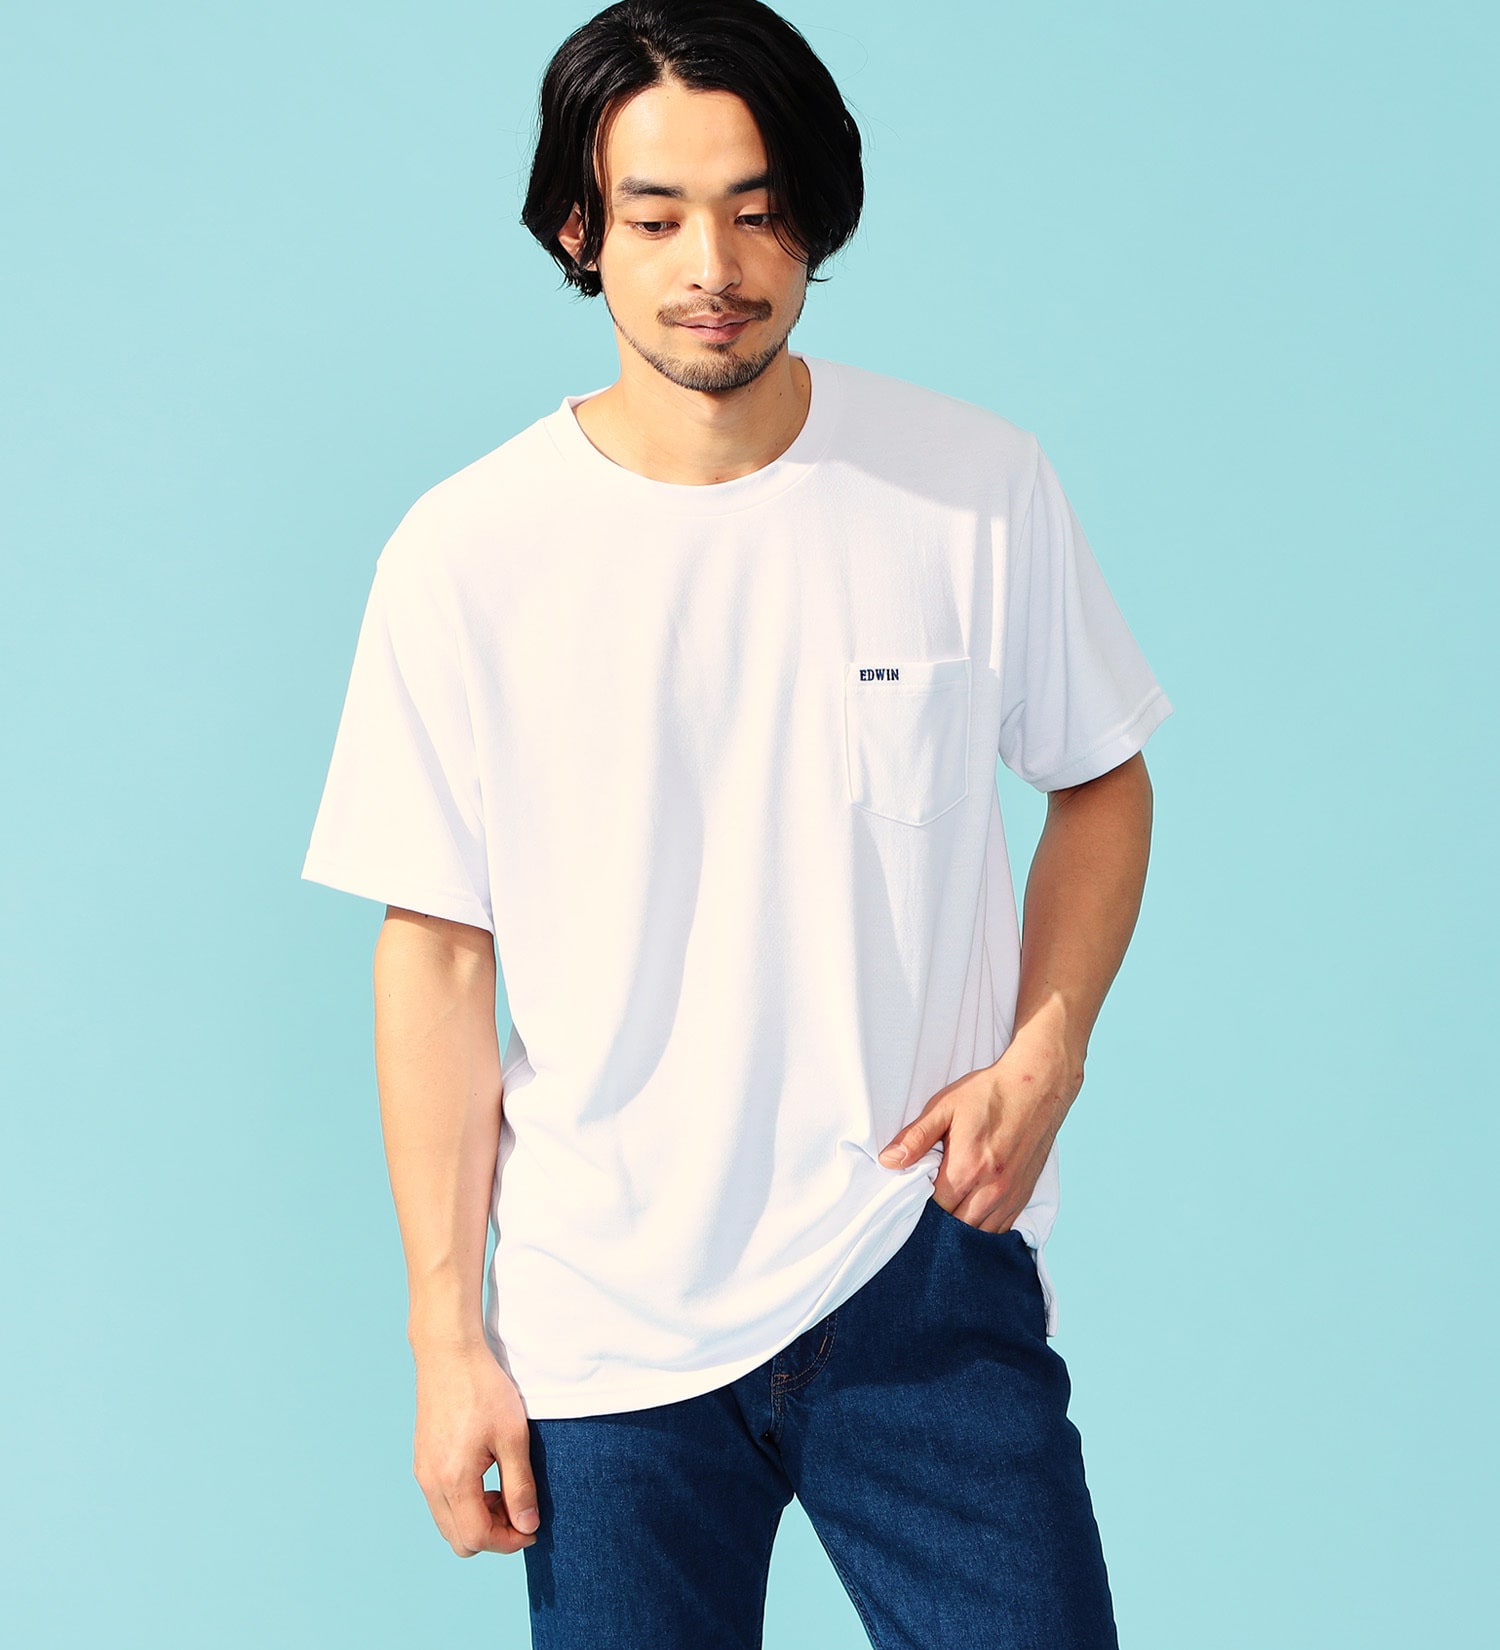 EDWIN(エドウイン)のCOOL FLEX Tシャツ 半袖|トップス/Tシャツ/カットソー/メンズ|ホワイト